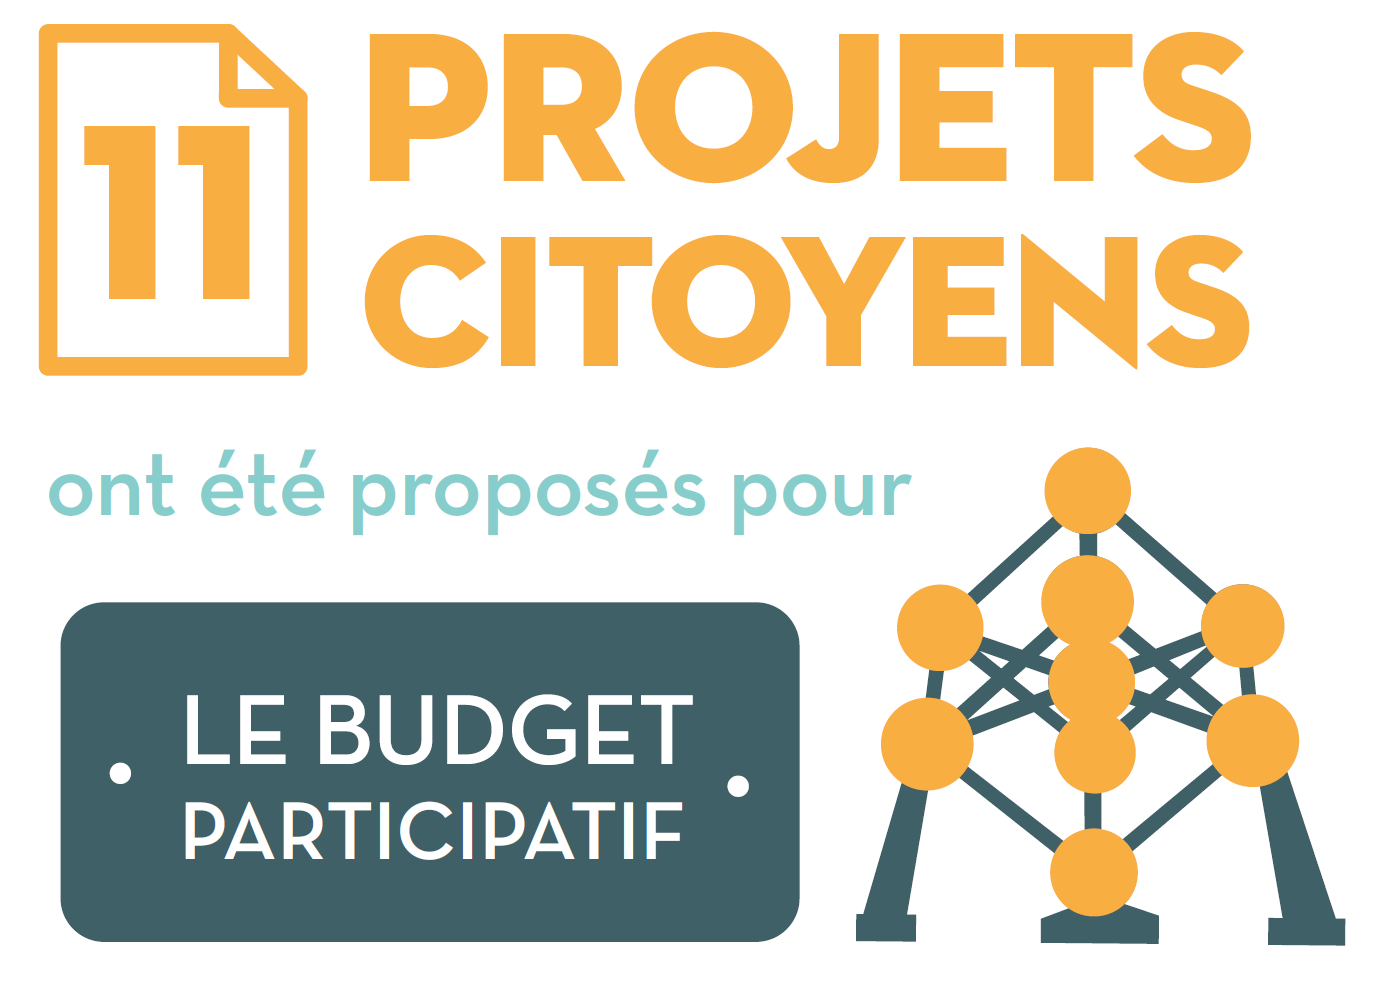 11 projets citoyens ont été proposés pour le budget participatif